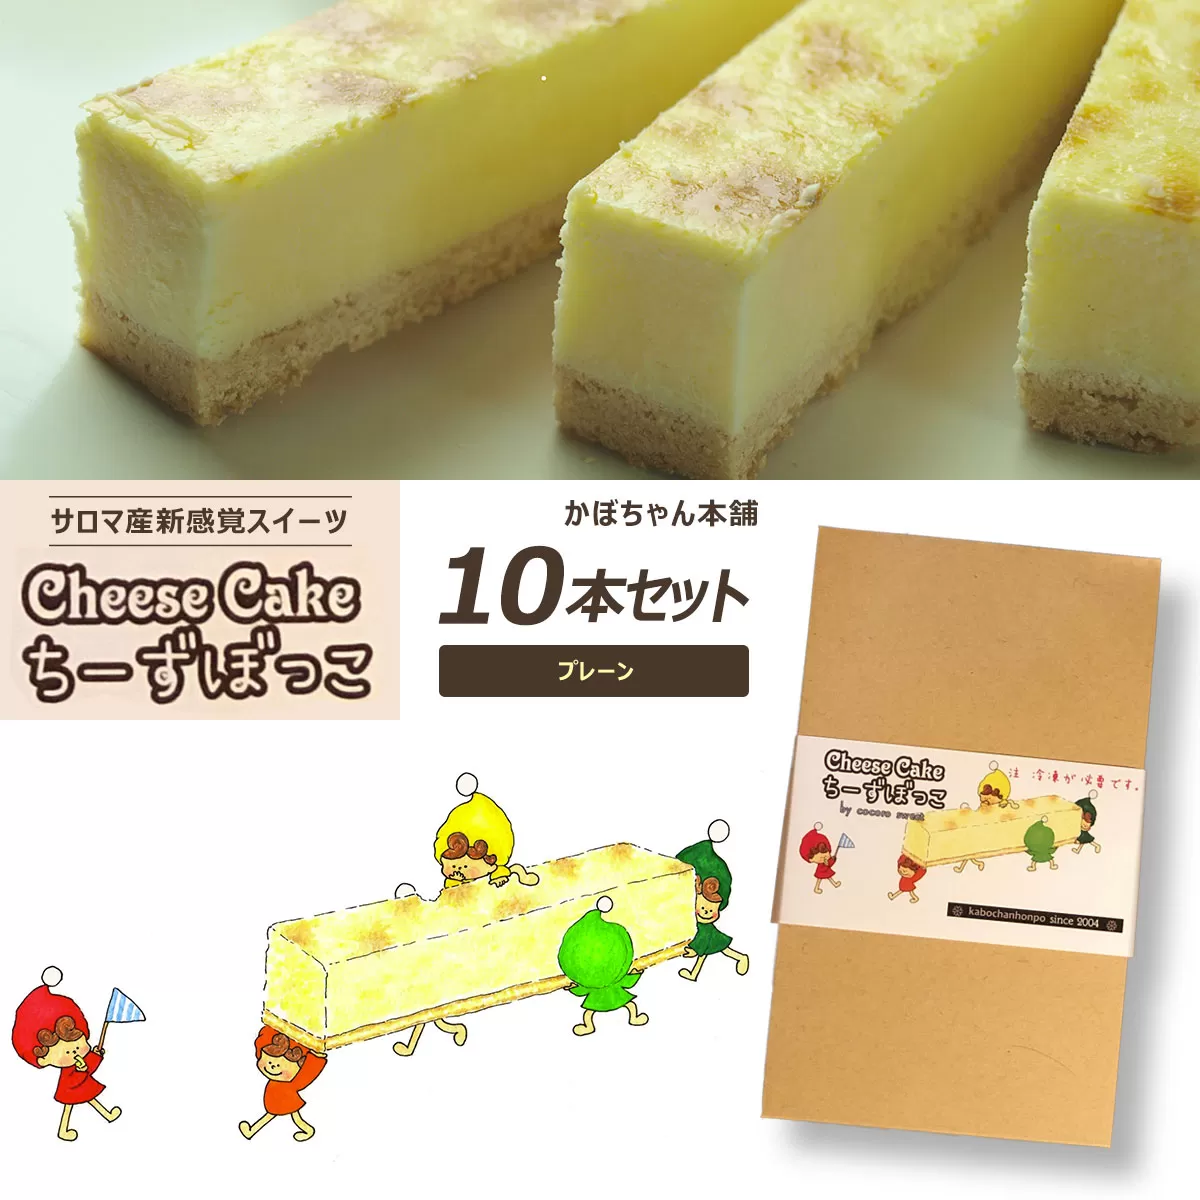 サロマ産新感覚スイーツ「チーズぼっこ」(プレーン)10本 セット SRML003